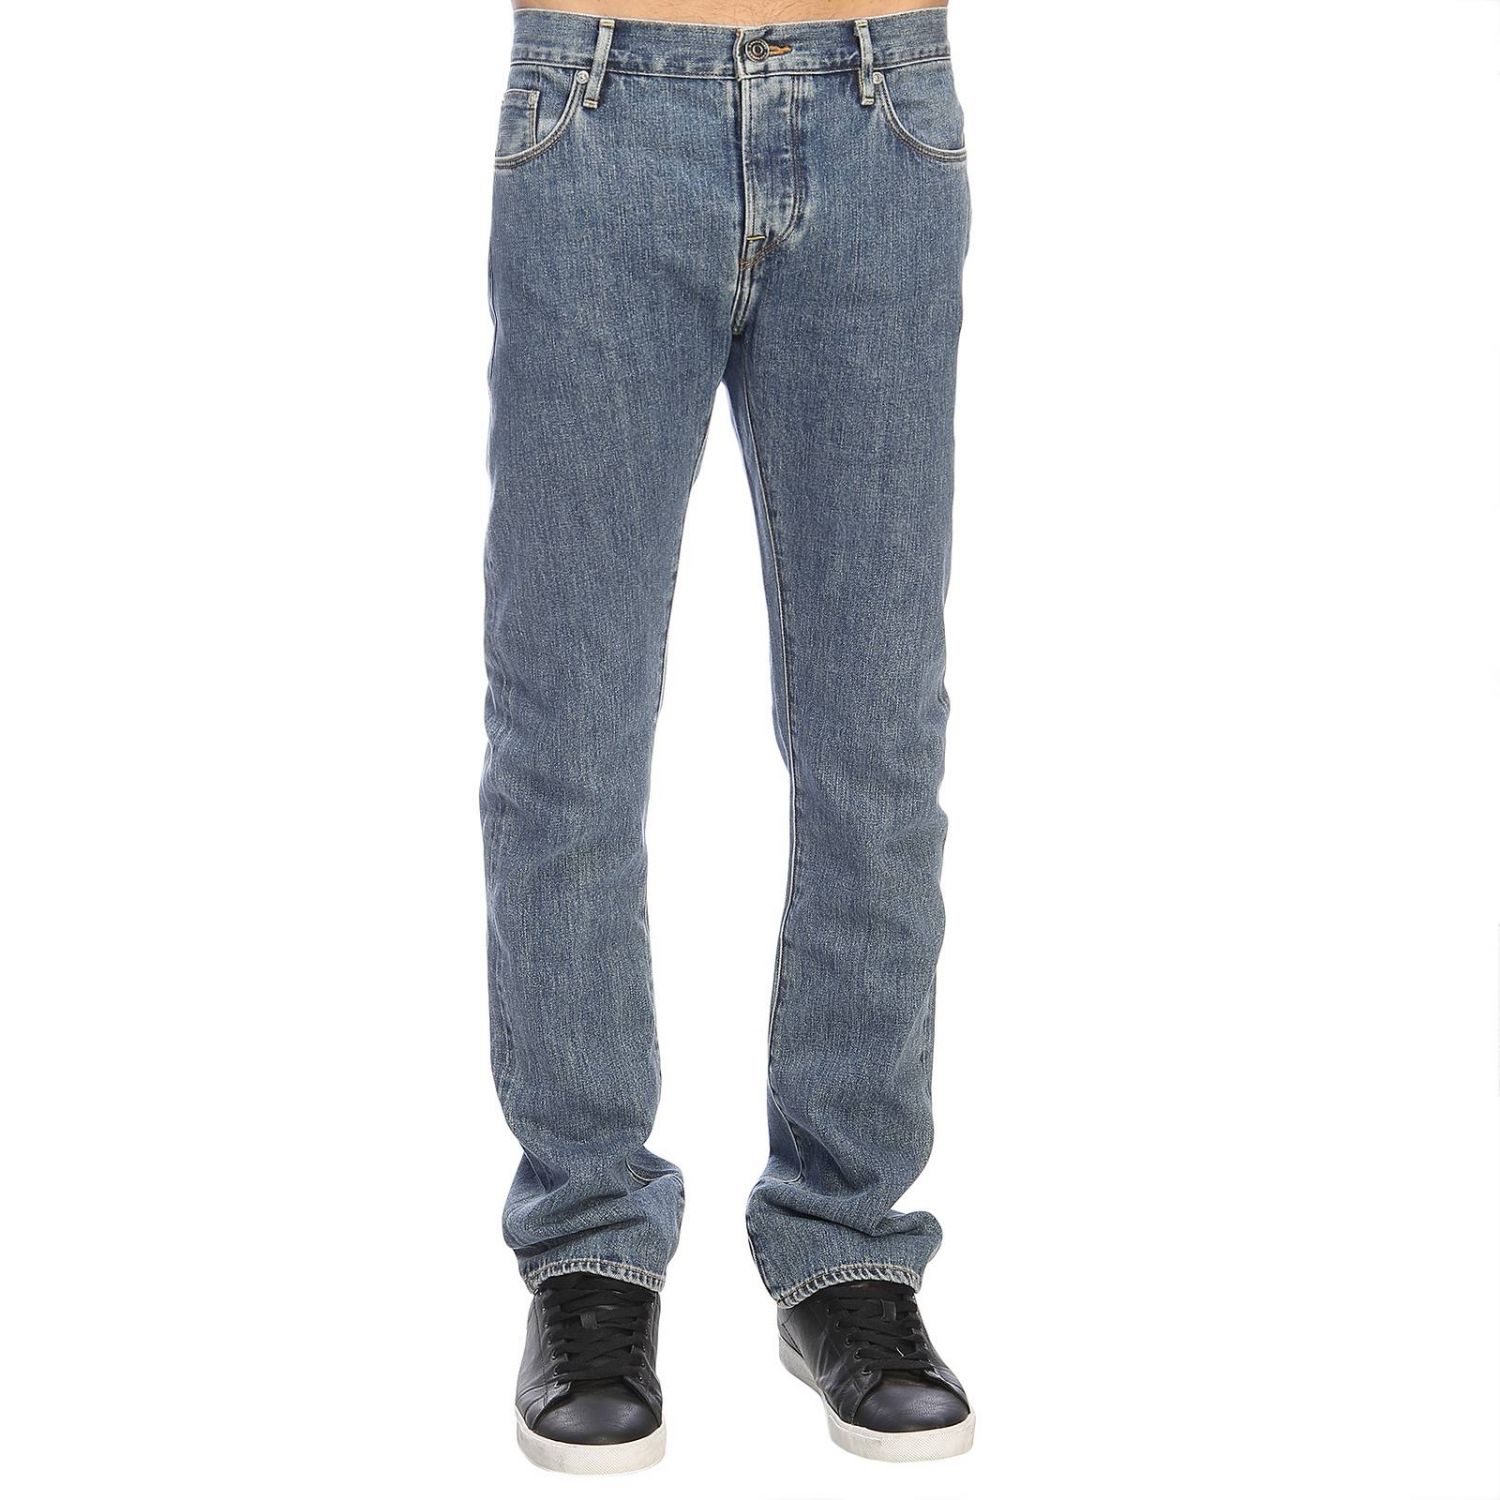 BURBERRY: Jeans men | Jeans Burberry Men Denim | Jeans Burberry 8008441 ...